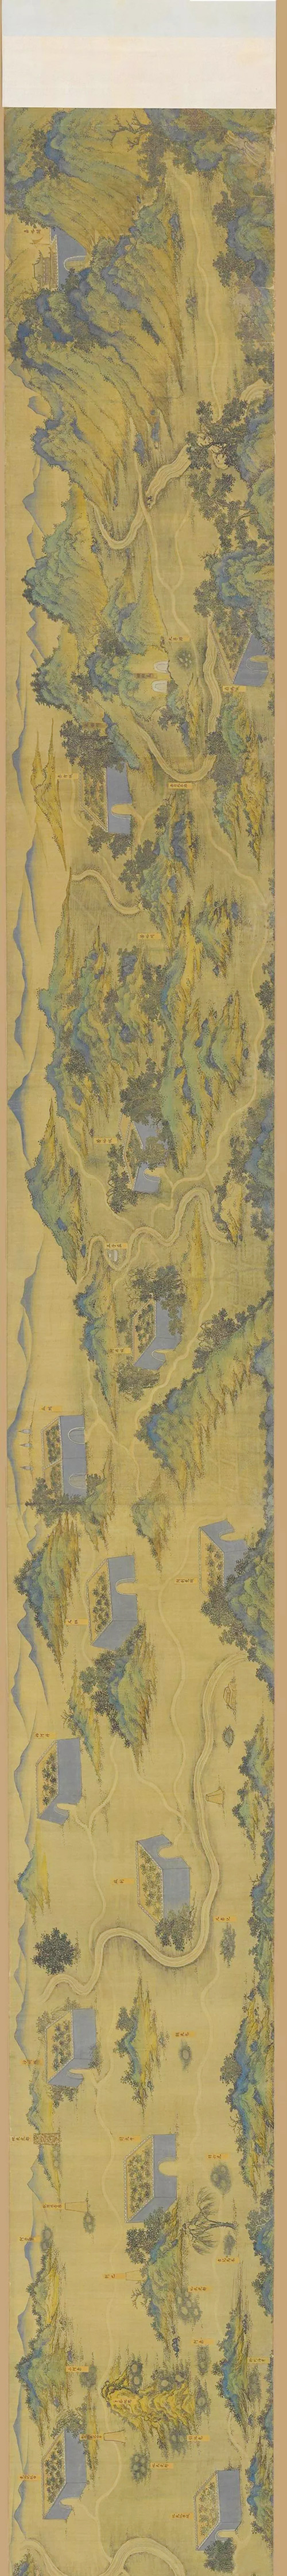 《丝路山水地图》